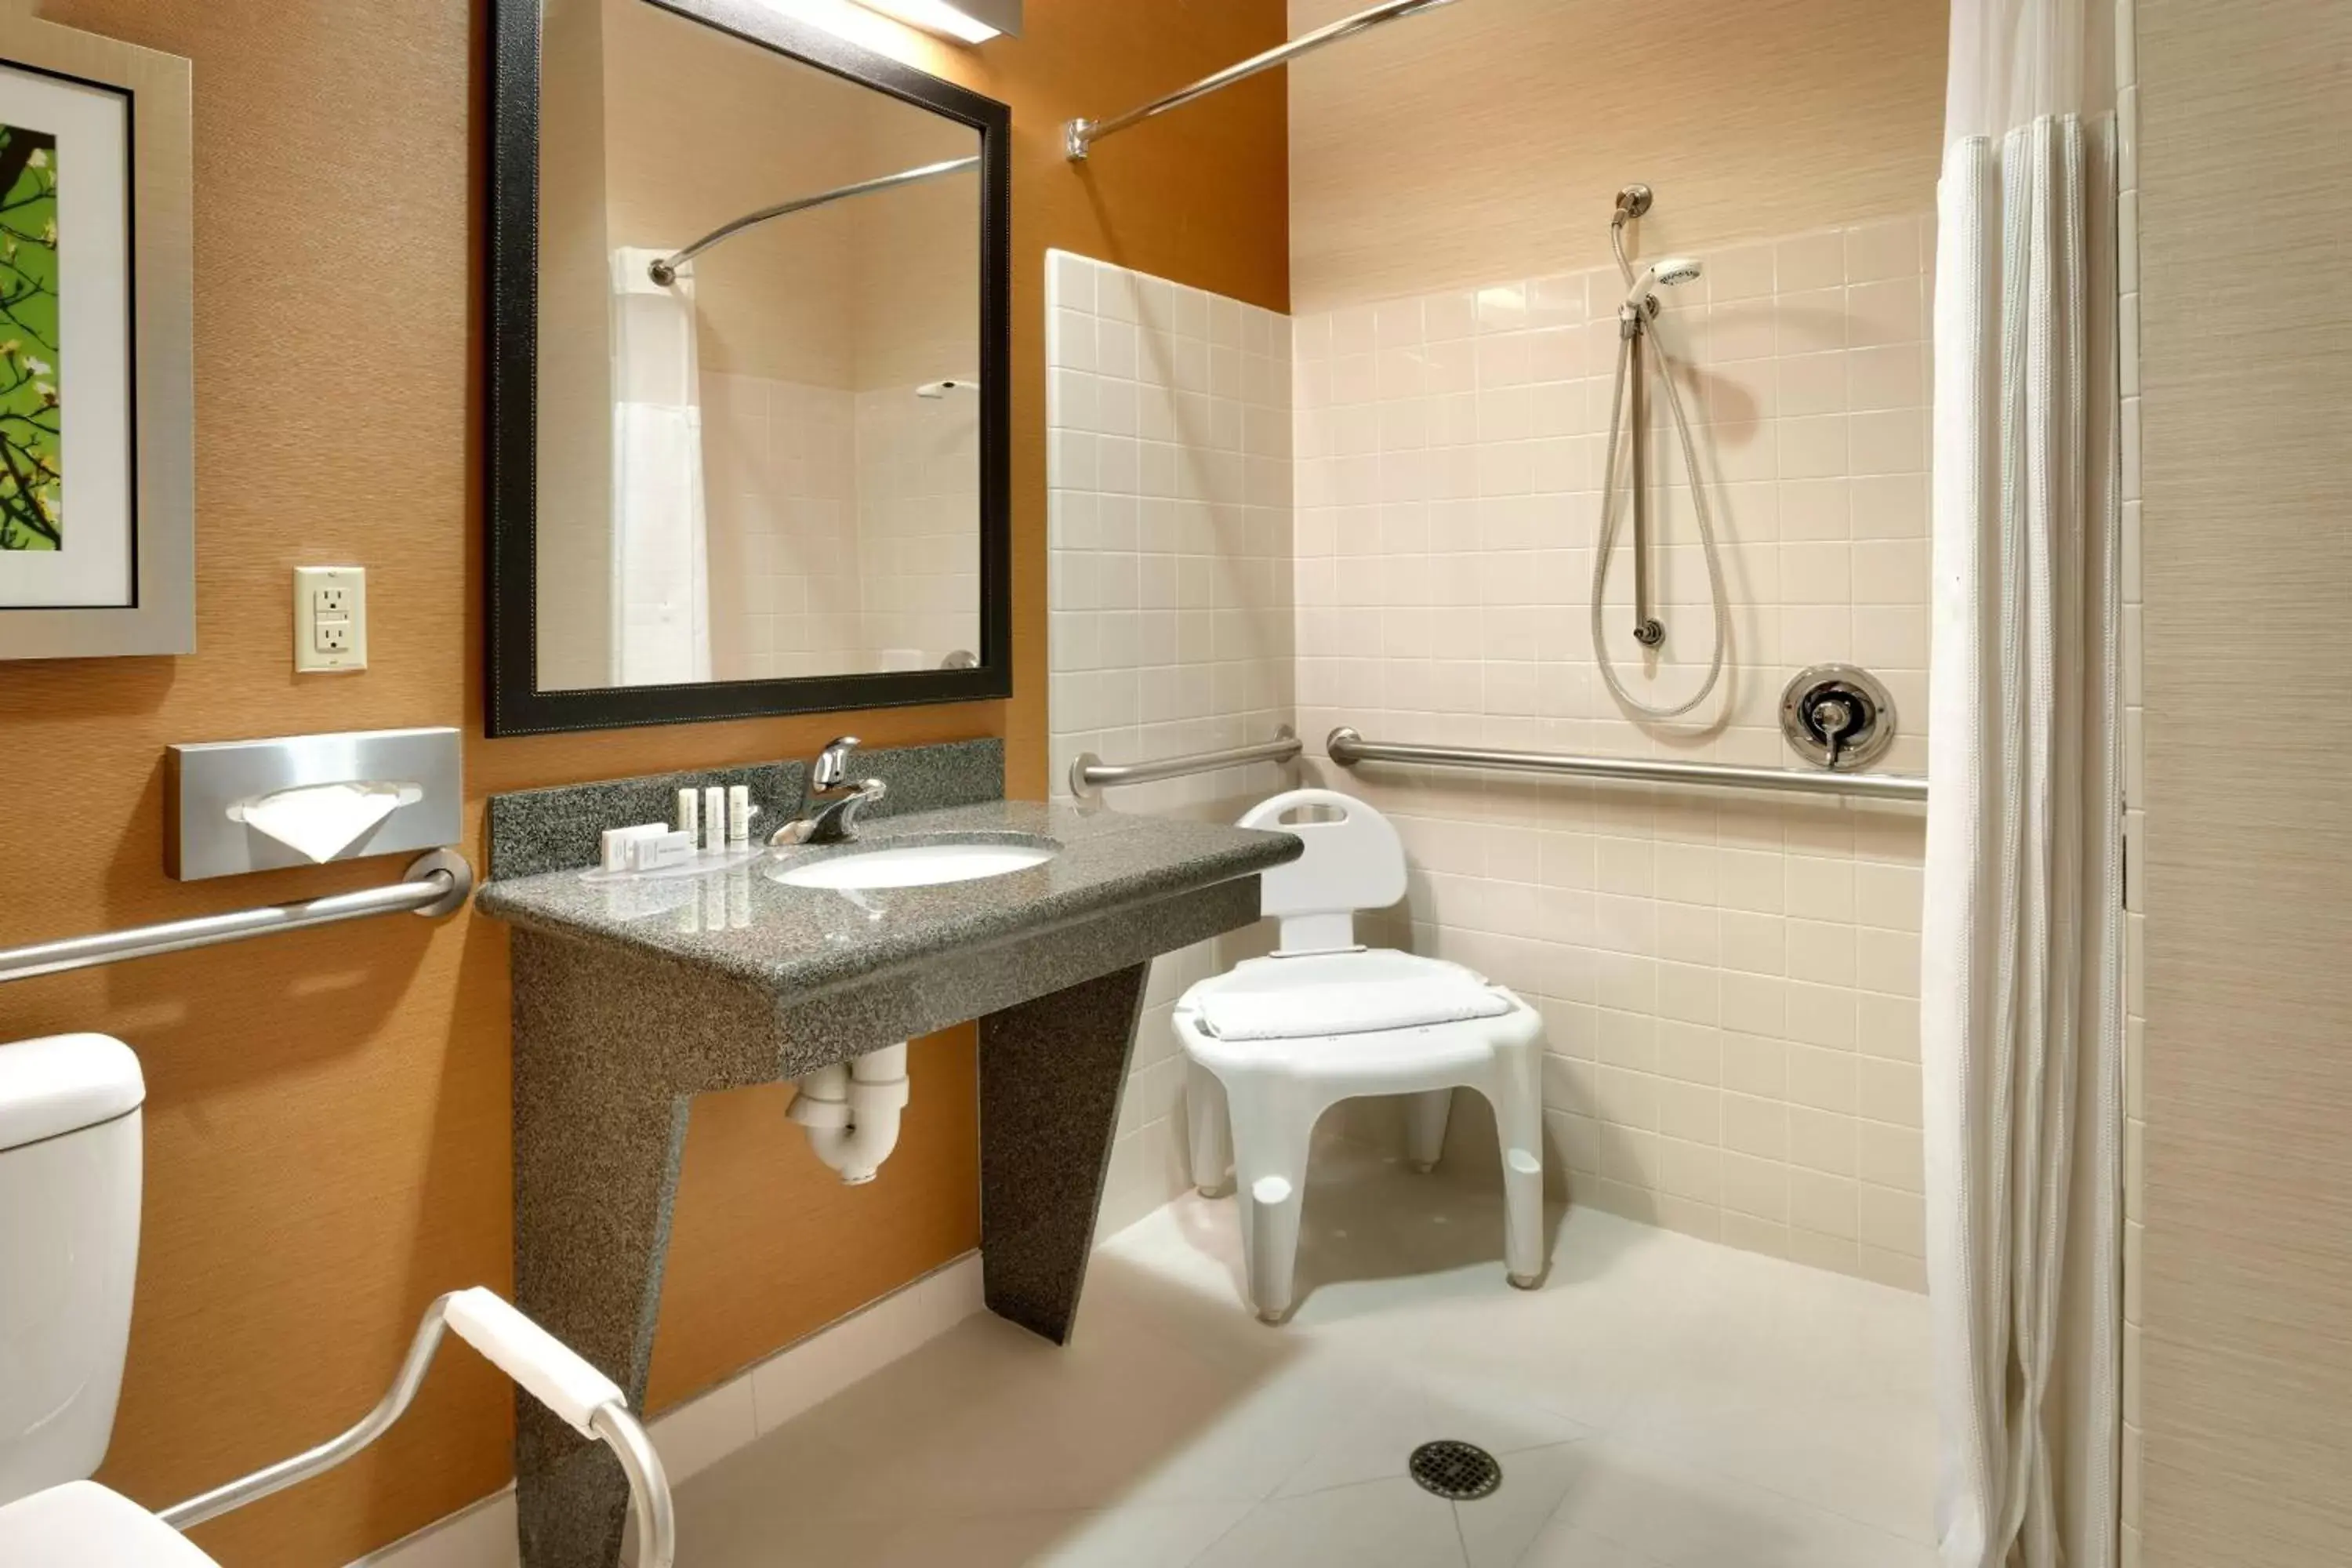 Bathroom in Fairfield Inn & Suites Salt Lake City Airport